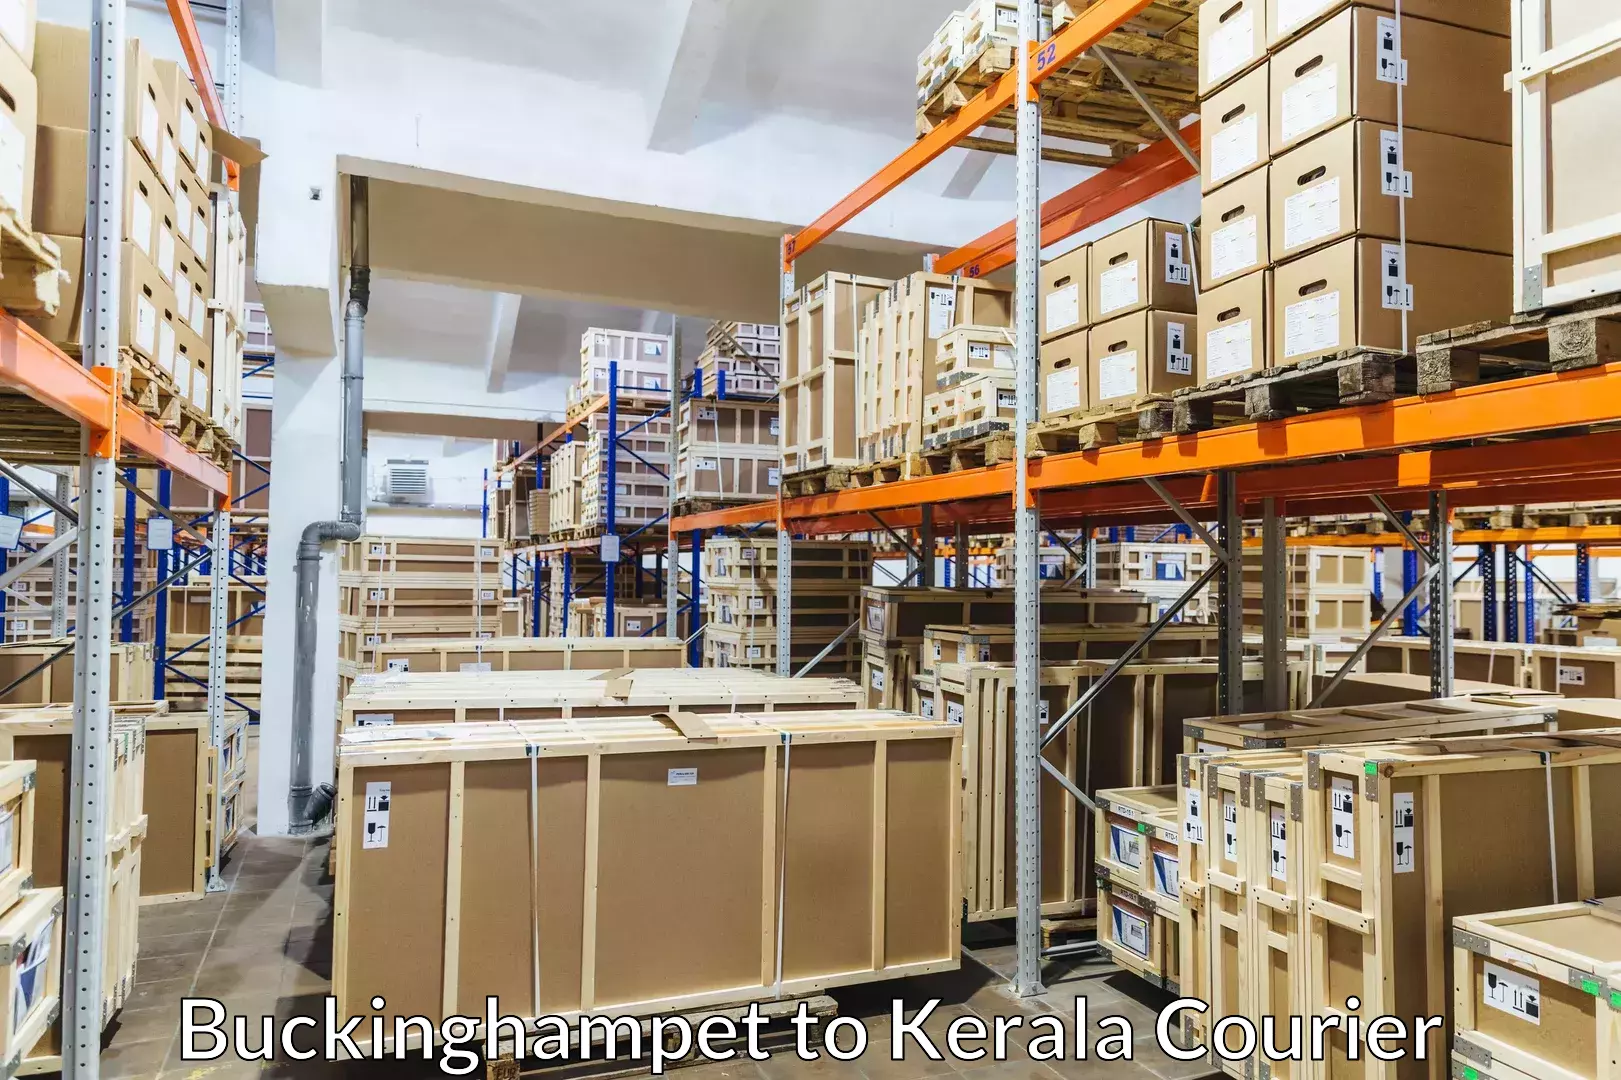 Efficient furniture transport Buckinghampet to Kerala